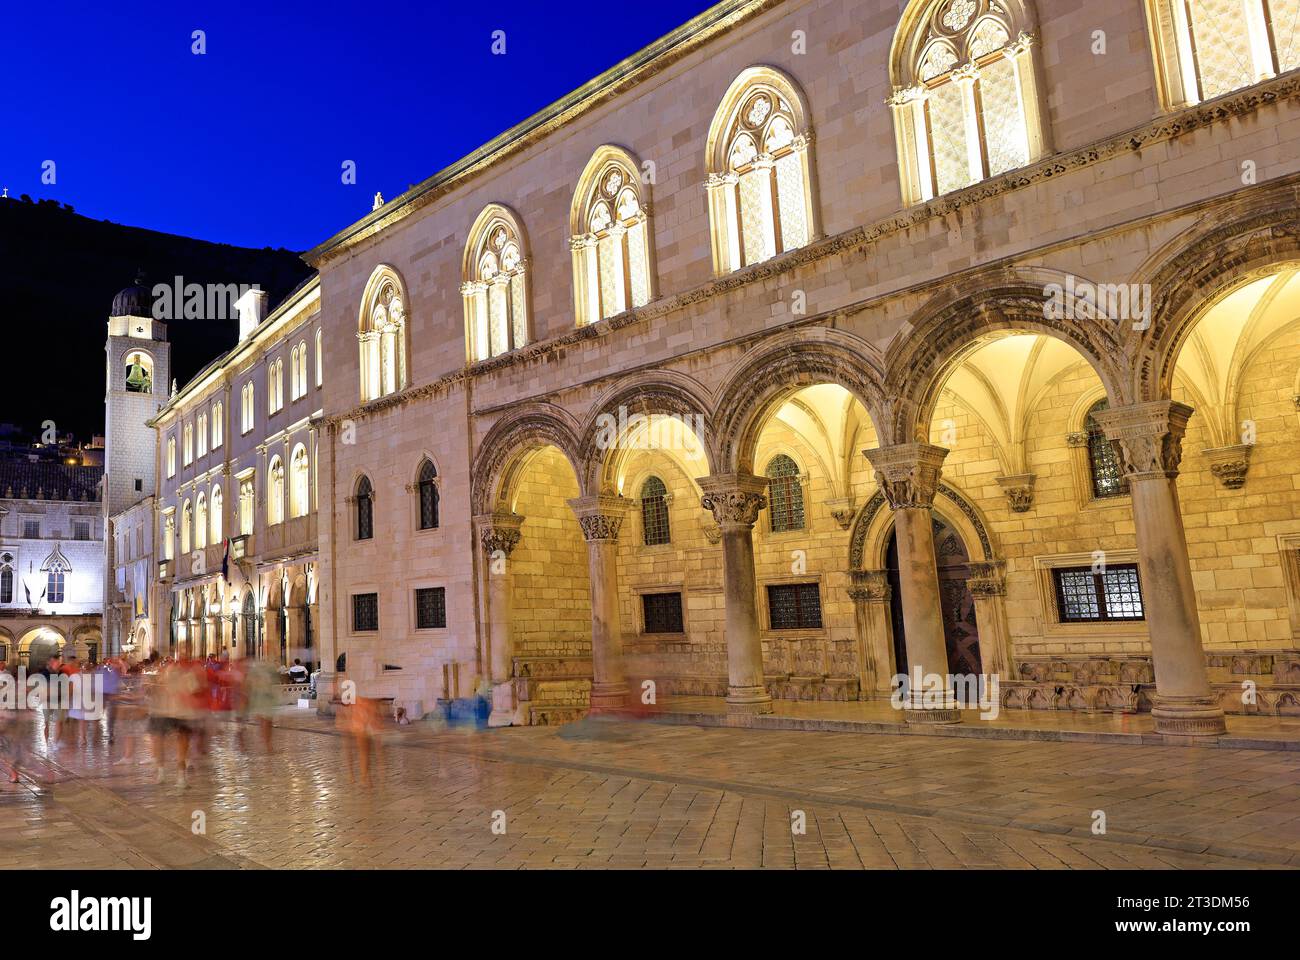 Ancienne rue de Dubrovnik illuminée au crépuscule avec Palais du recteur au premier plan, Croatie Banque D'Images